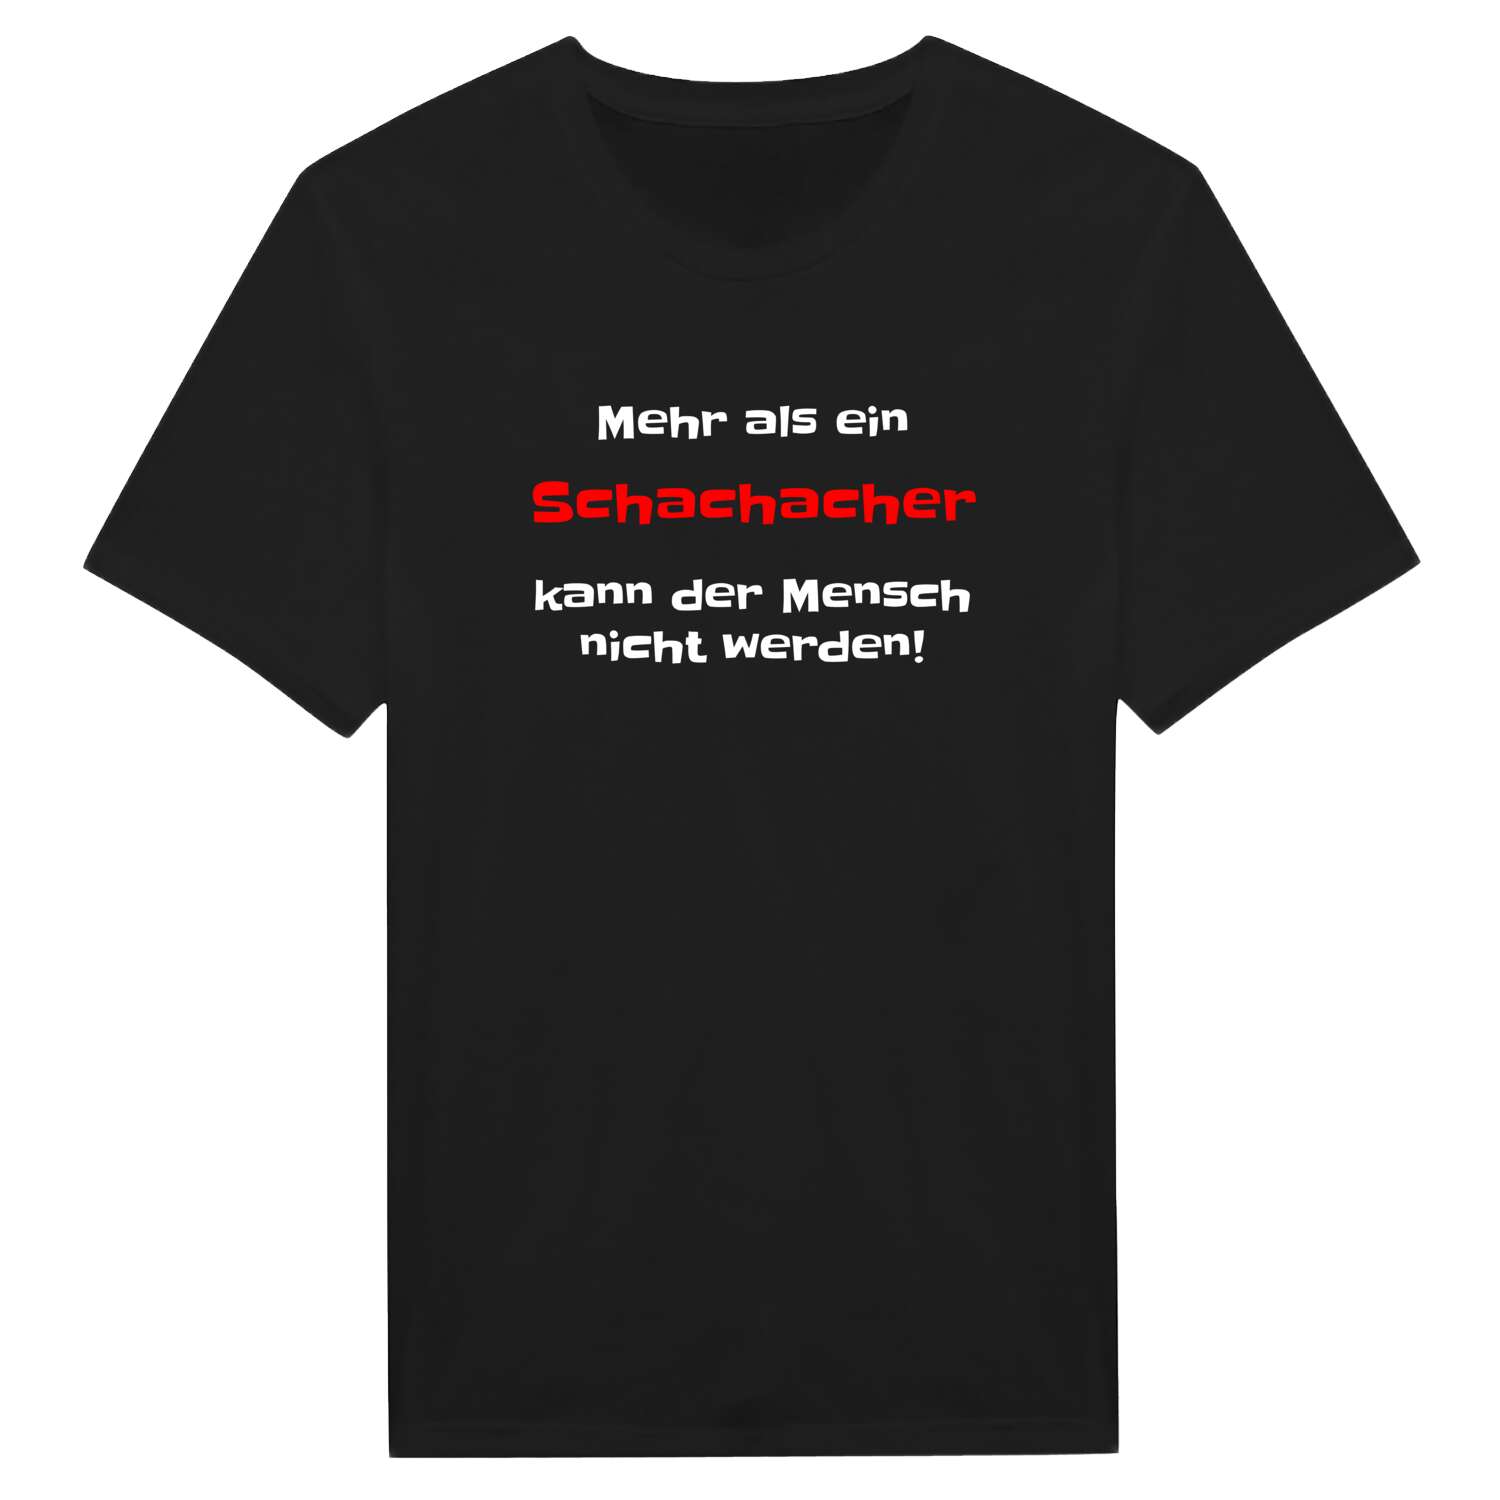 Schachach T-Shirt »Mehr als ein«